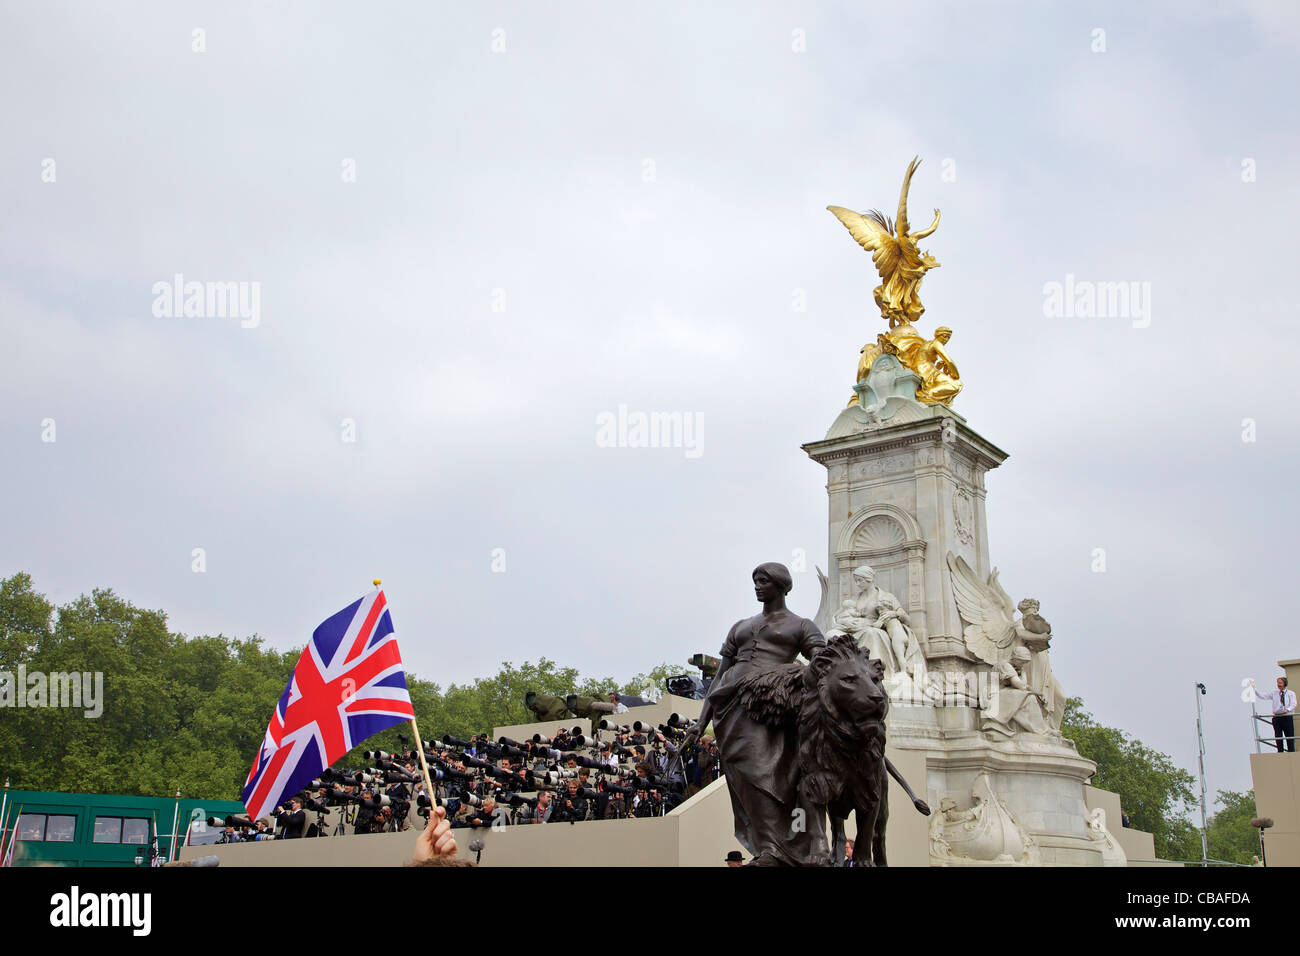 Les photographes de la presse mondiale Monument de la Victoire de Samothrace à l'extérieur de Buckingham Palace, le Prince William Kate Middleton mariage Londres Banque D'Images